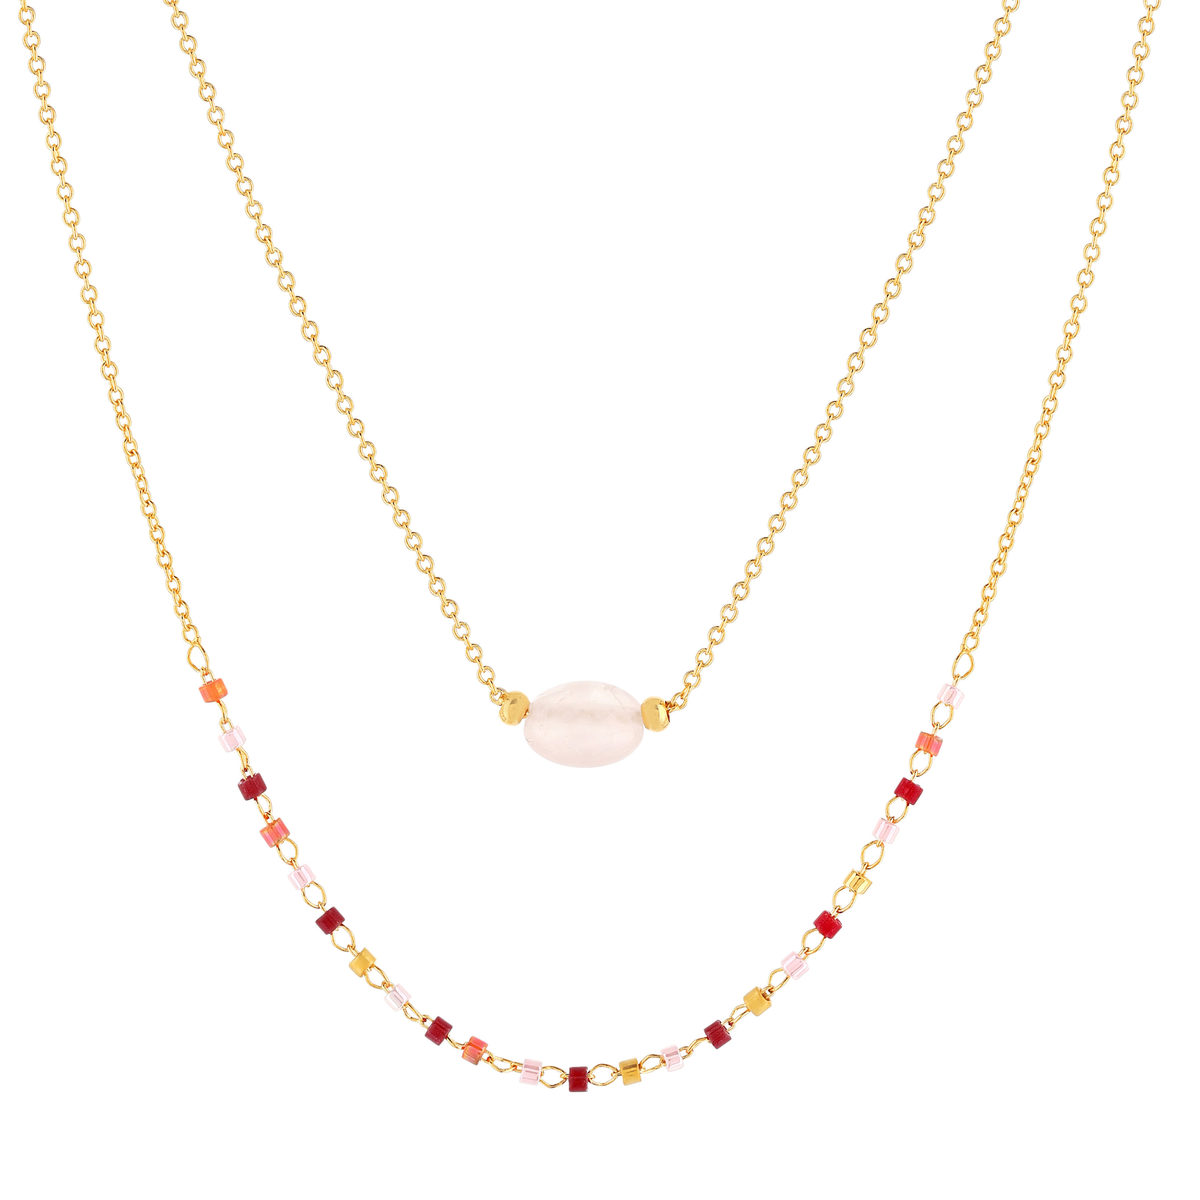 Collier double rang plaqué or jaune quartz rose perles rocaille 40 cm